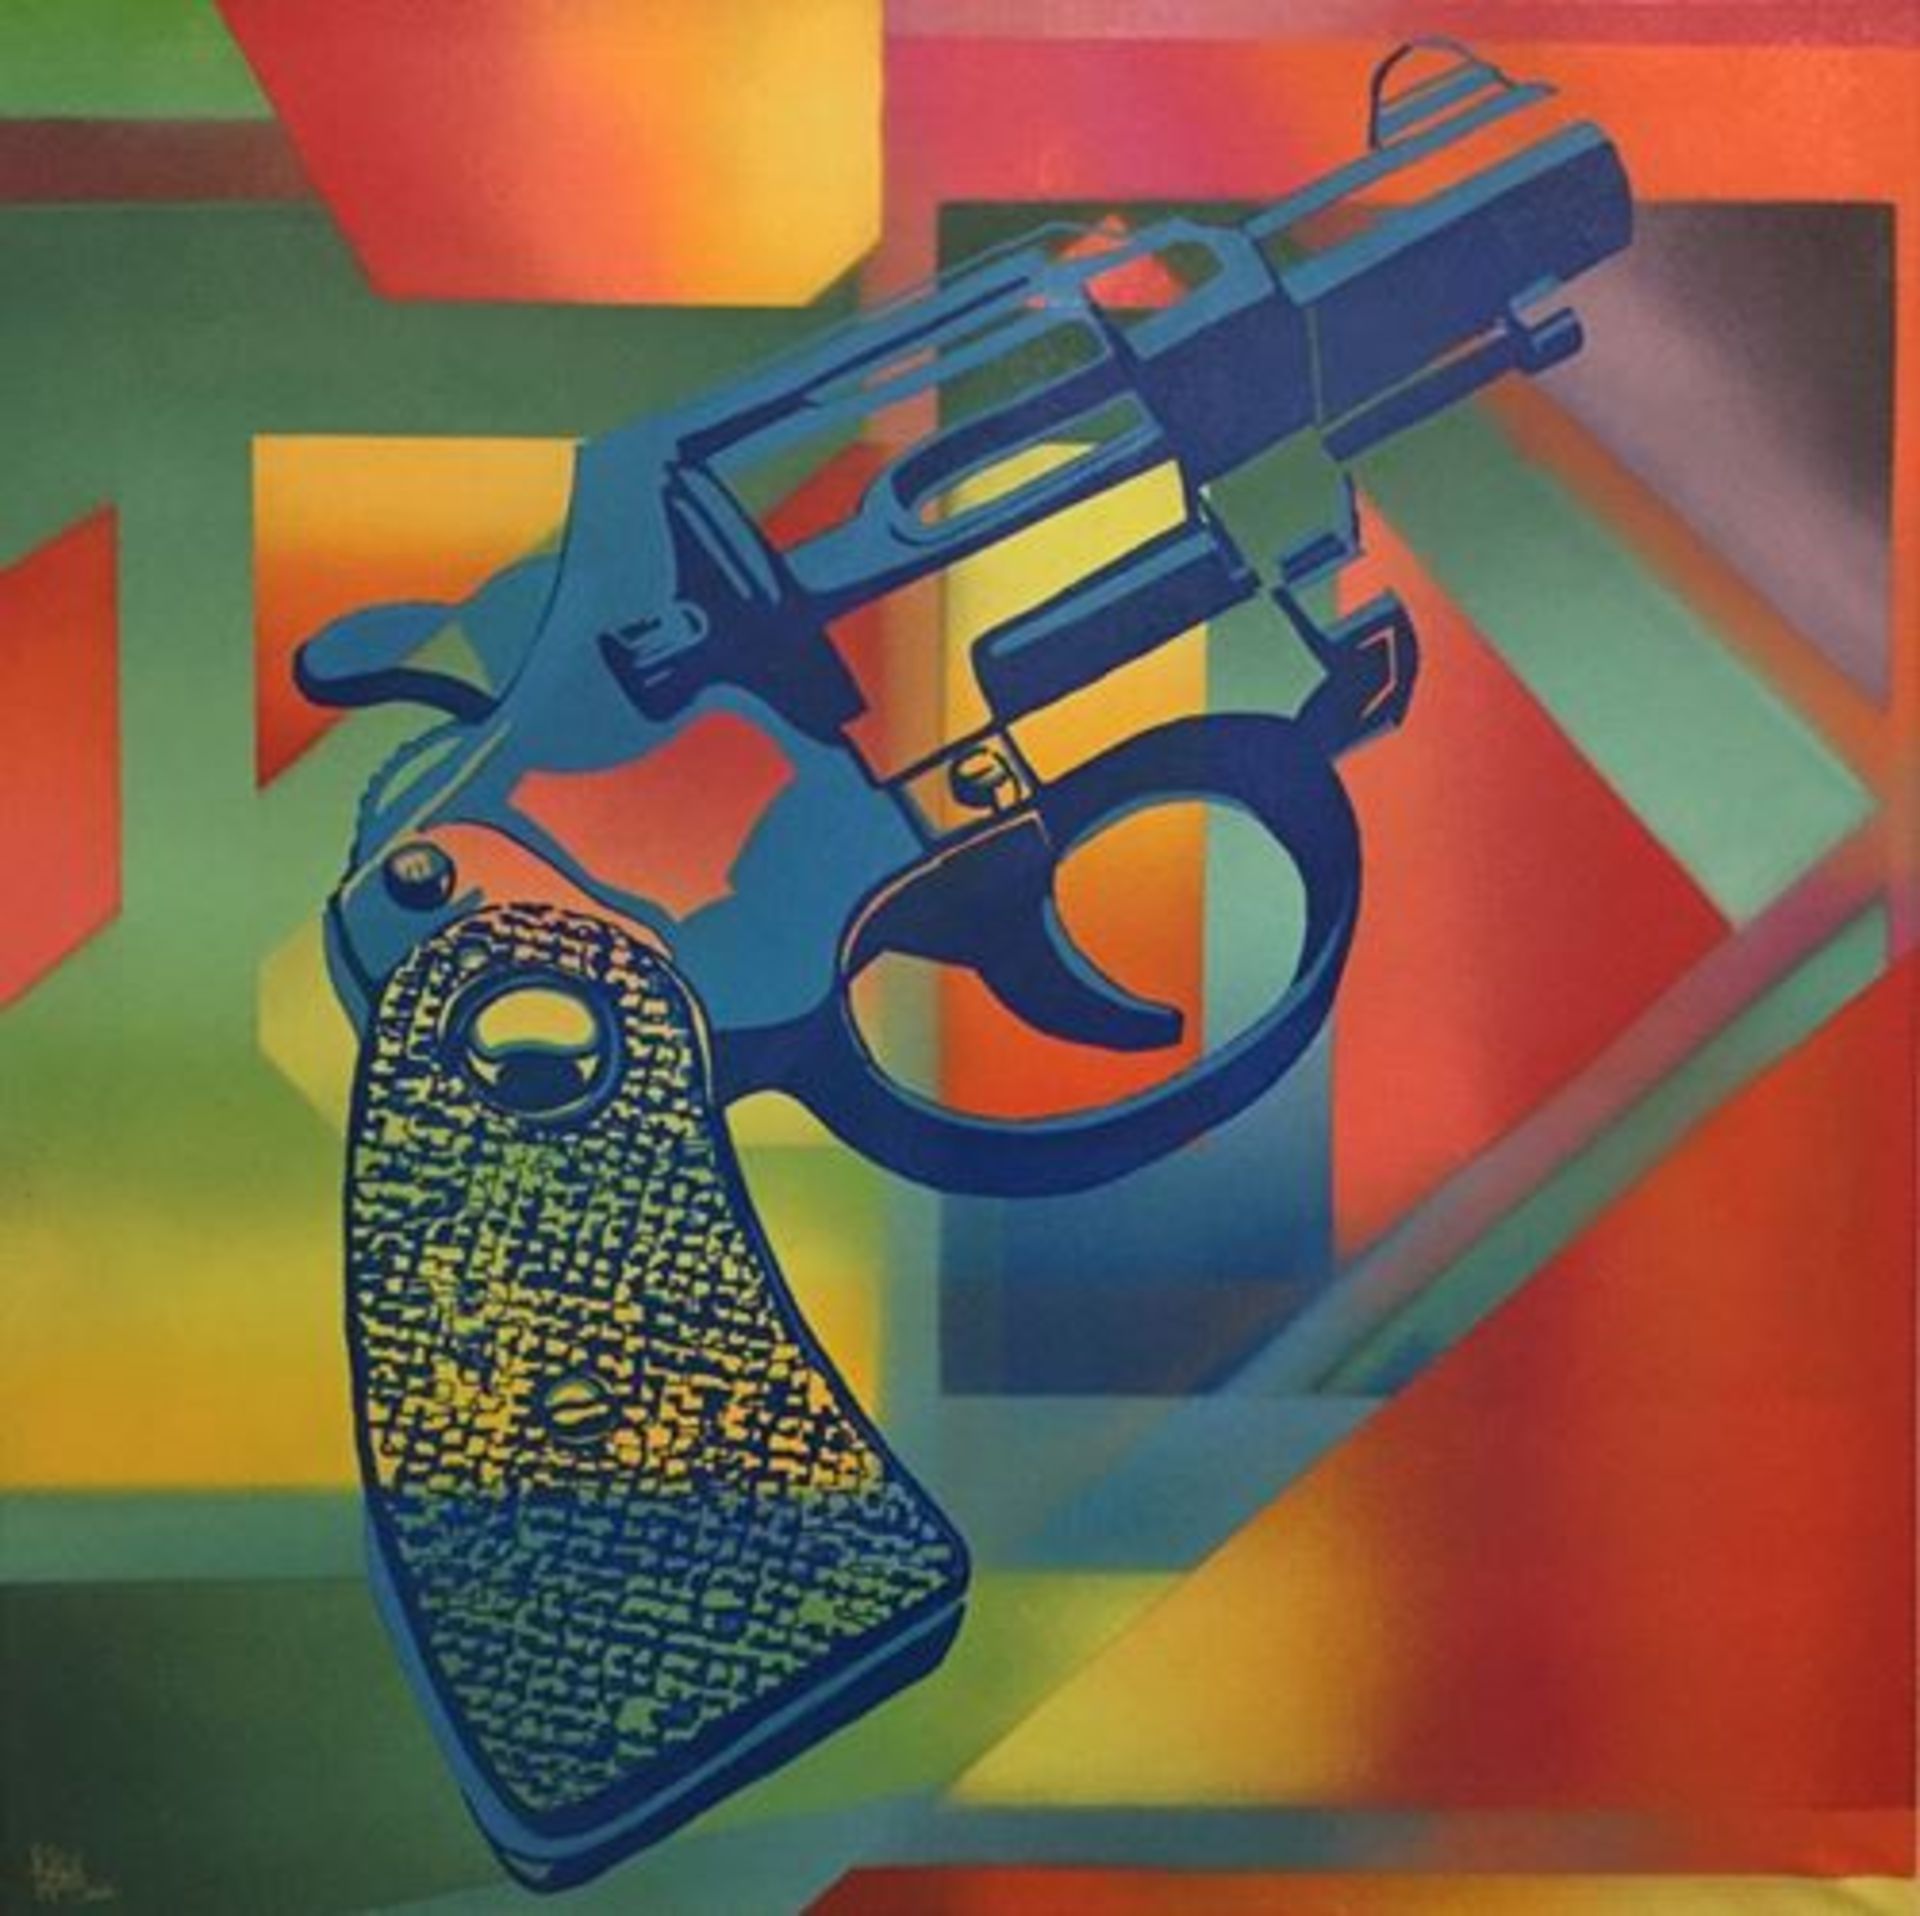 Pariz One "Son of a Gun", 2016 Spray and acrylic on canvas signed 80 x 80 cm - - [...]